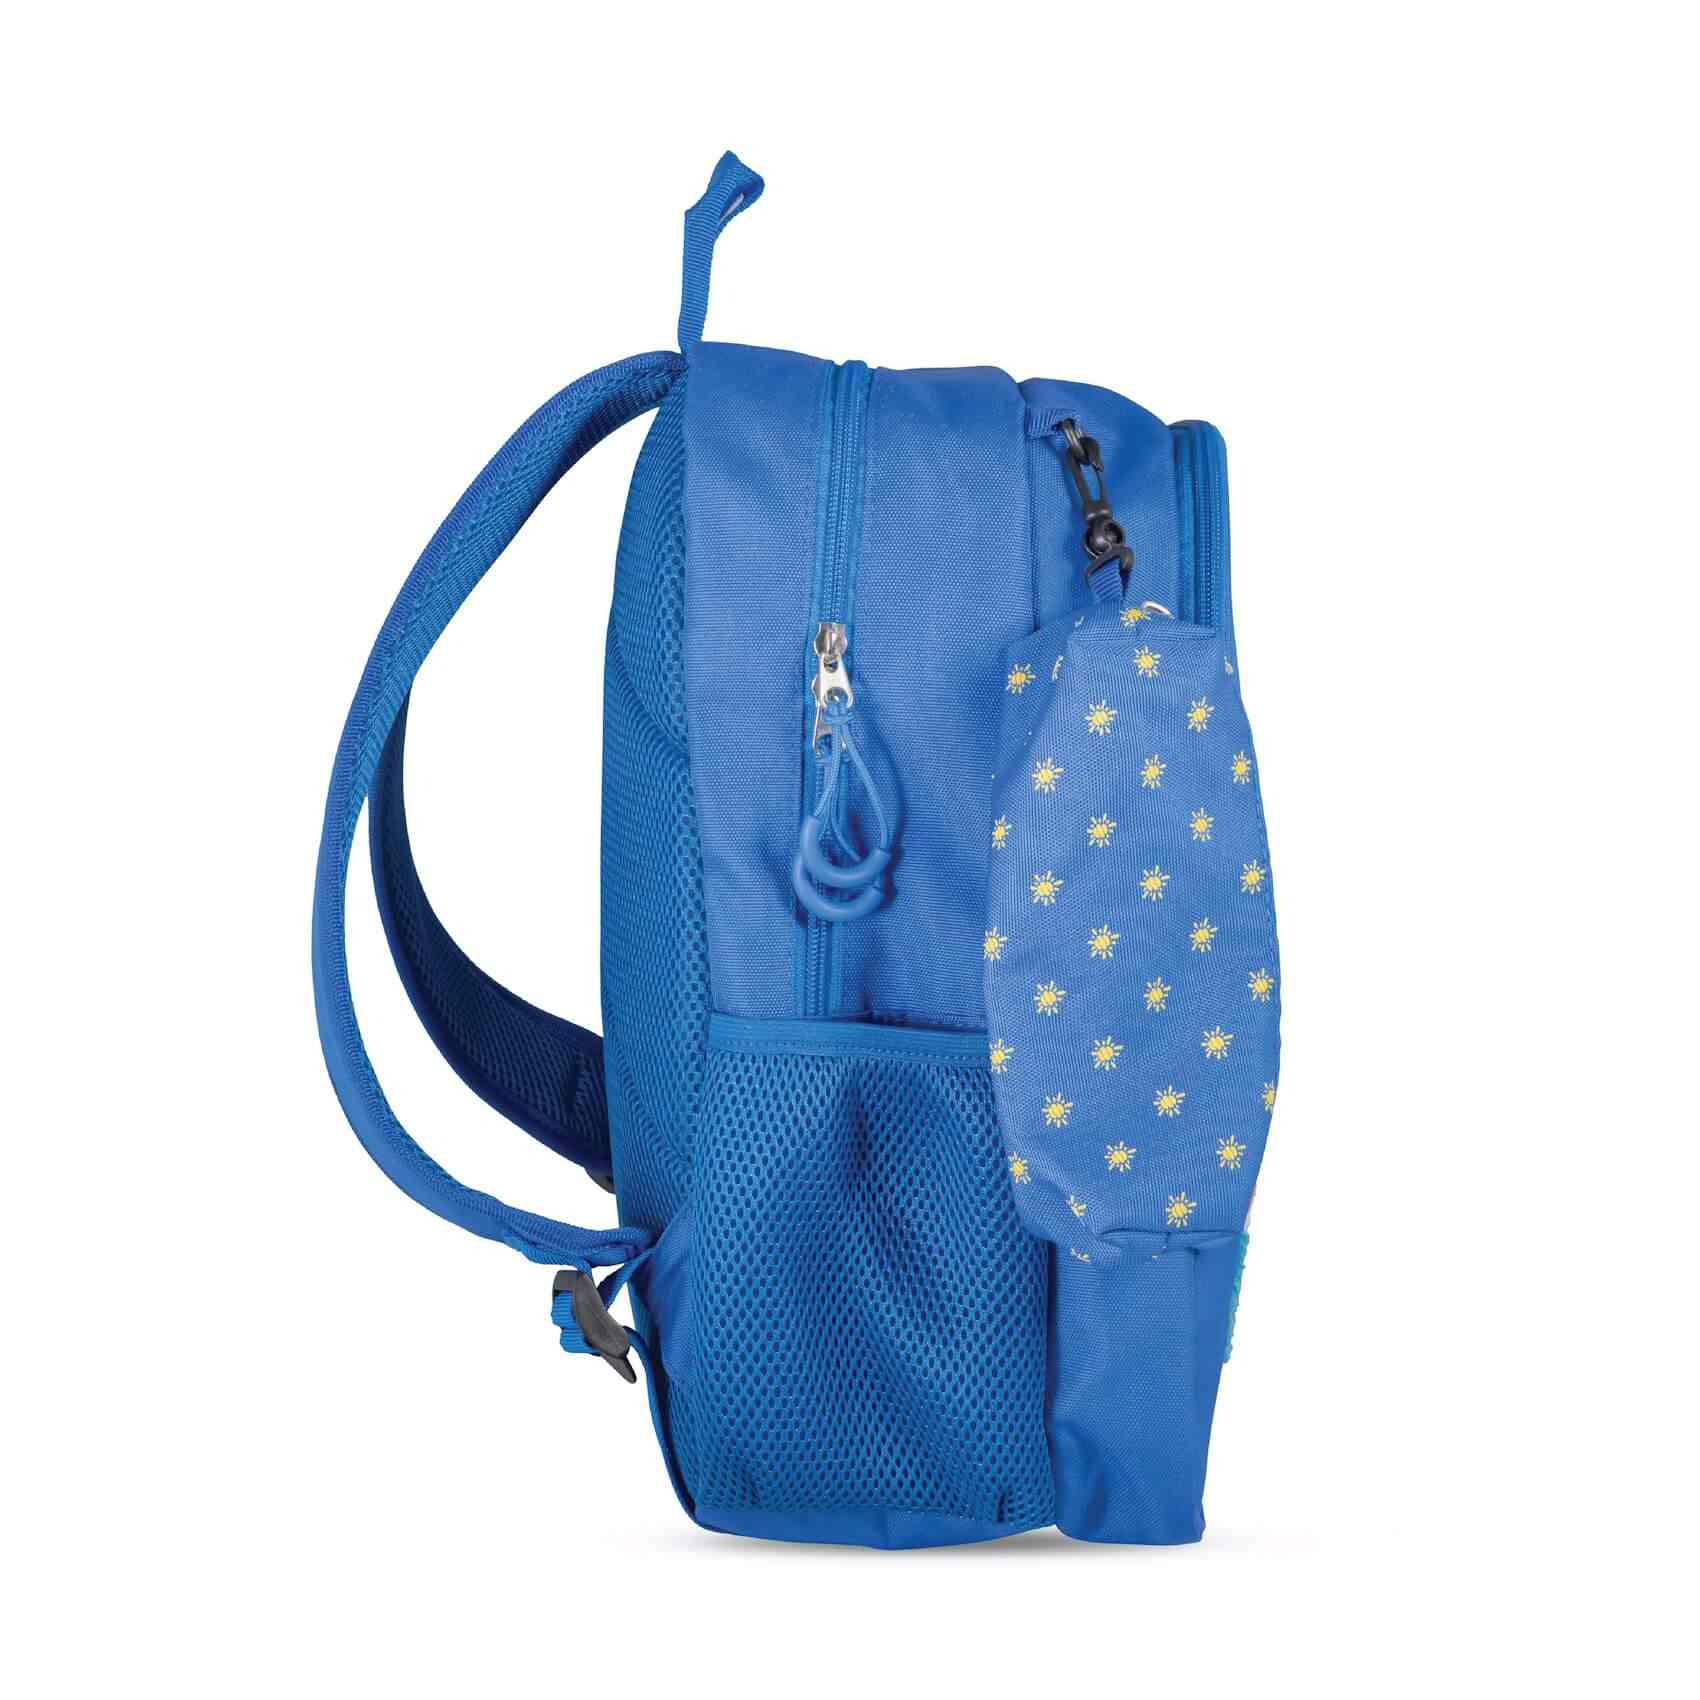 oloe-plush-character-backpack-blue-eko-side-facing